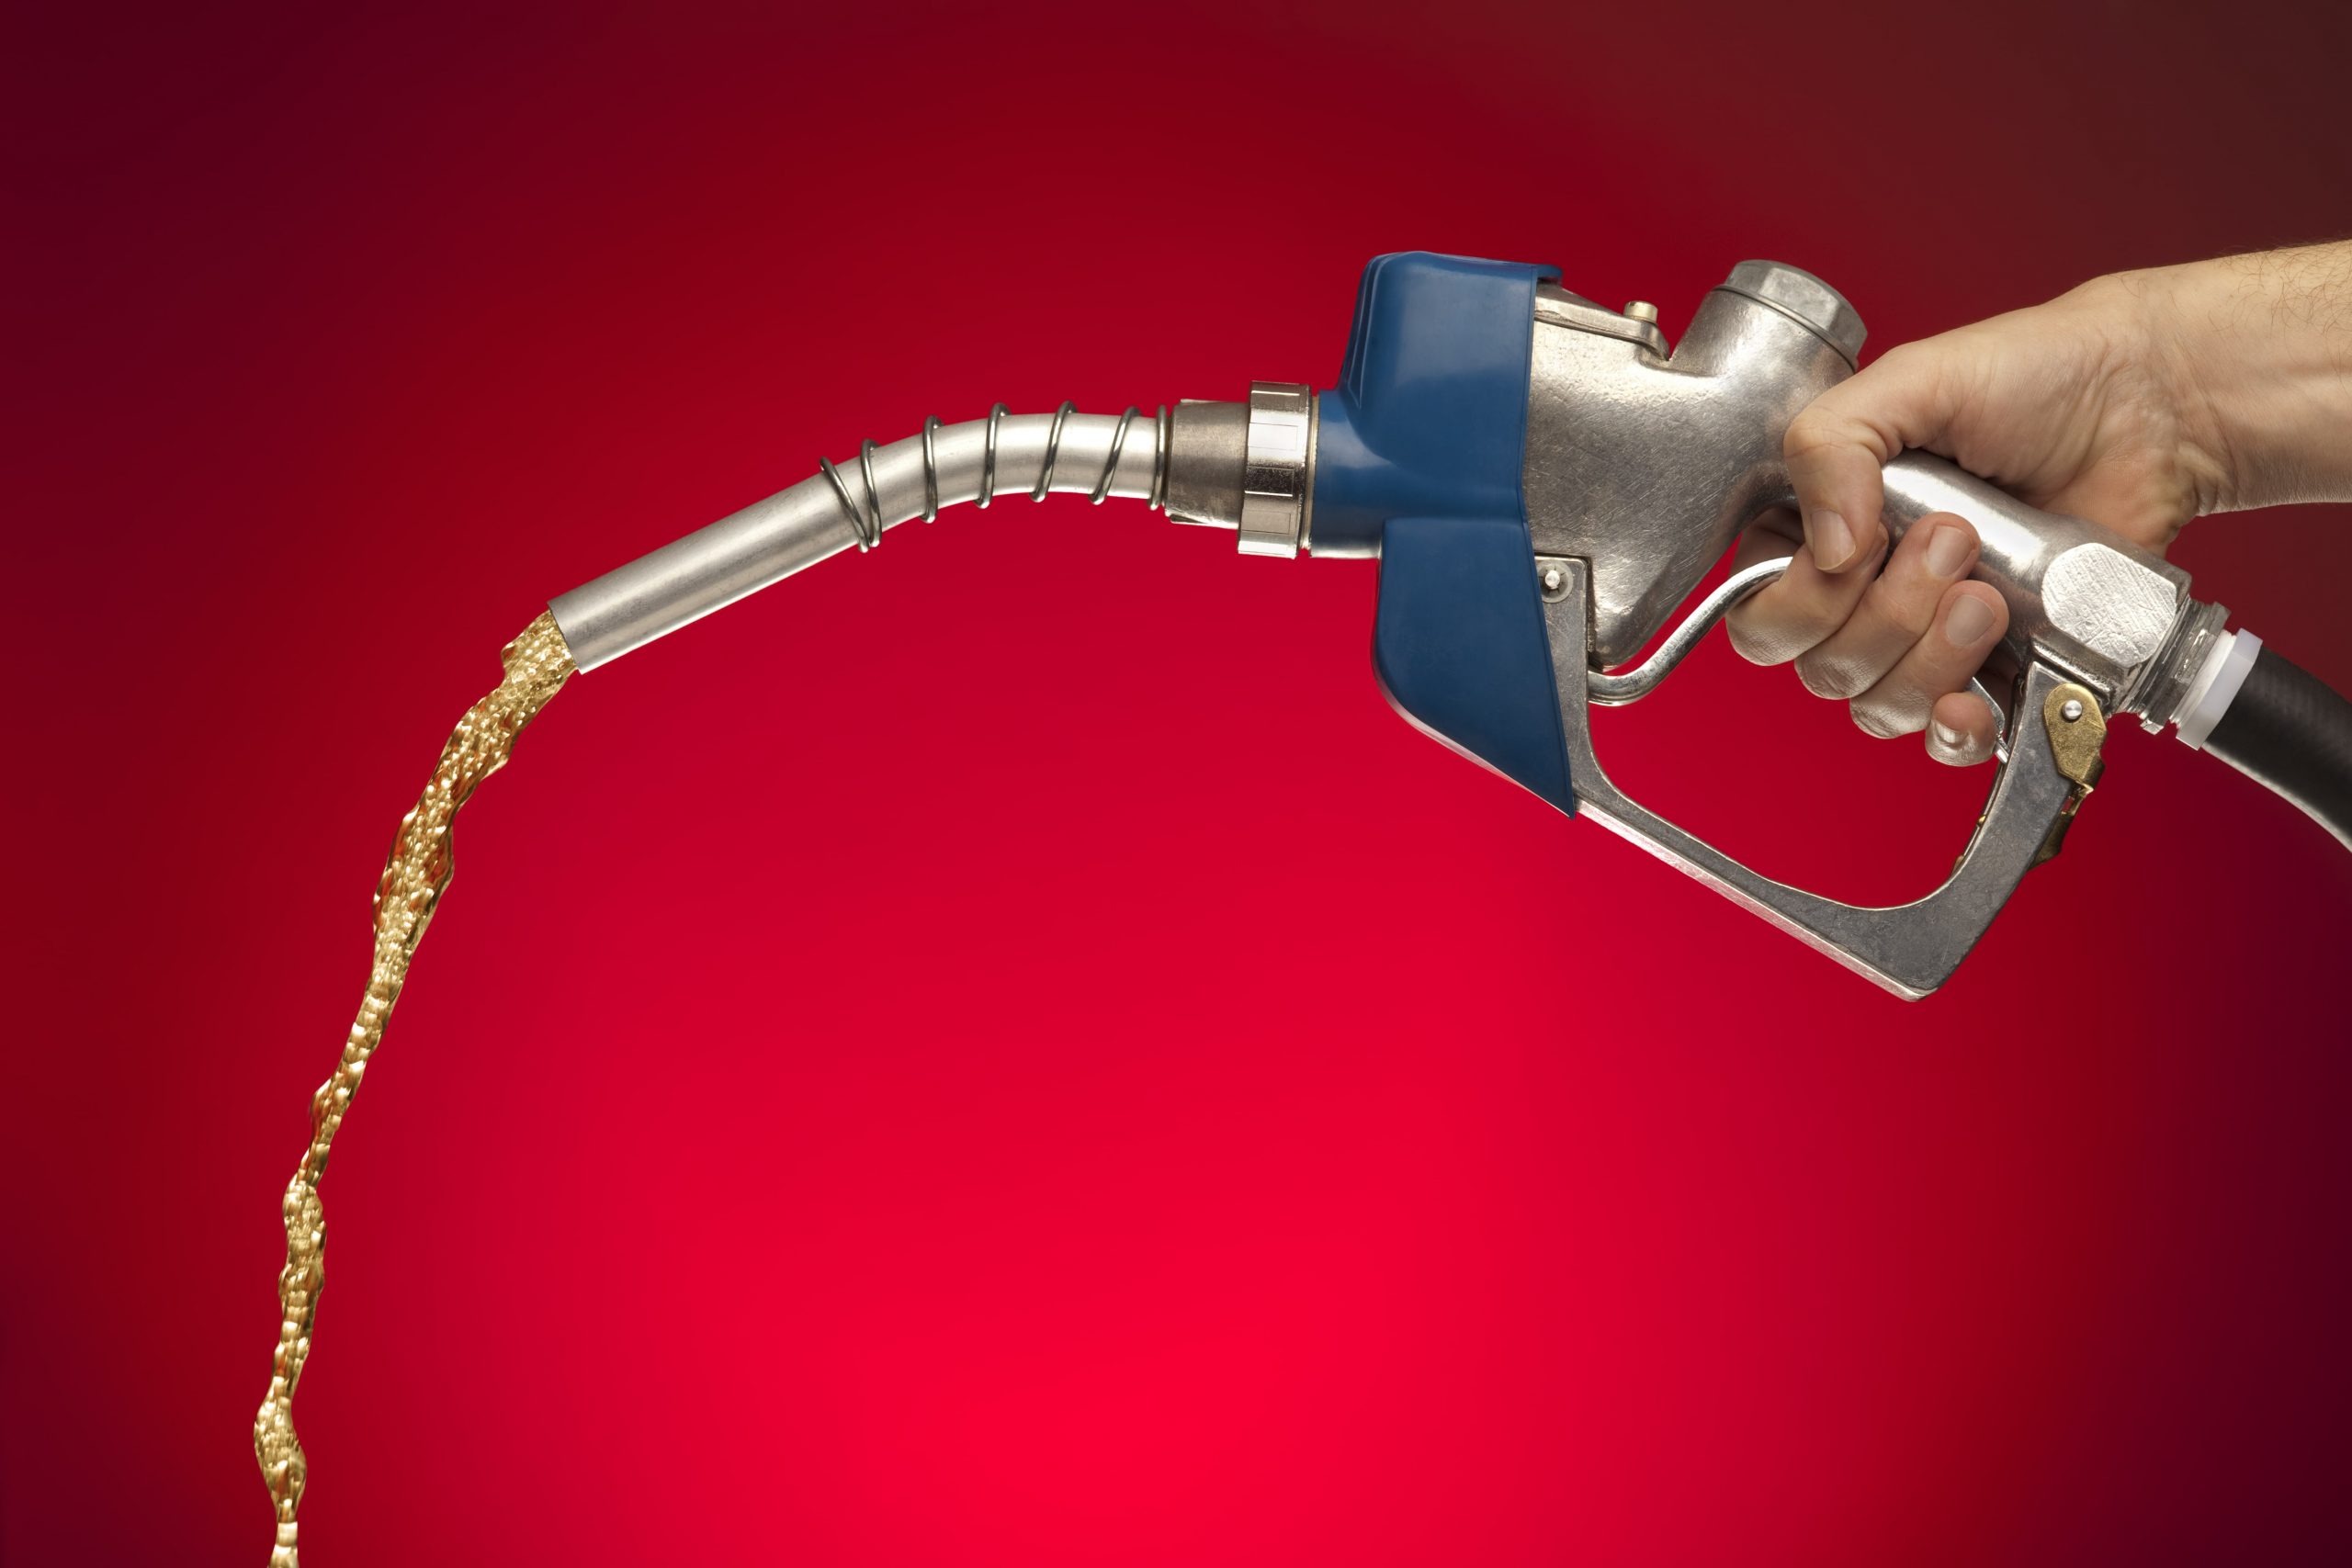 Gasolina fica mais cara no primeiro semestre e chega a R$ 6,02, aponta índice 1